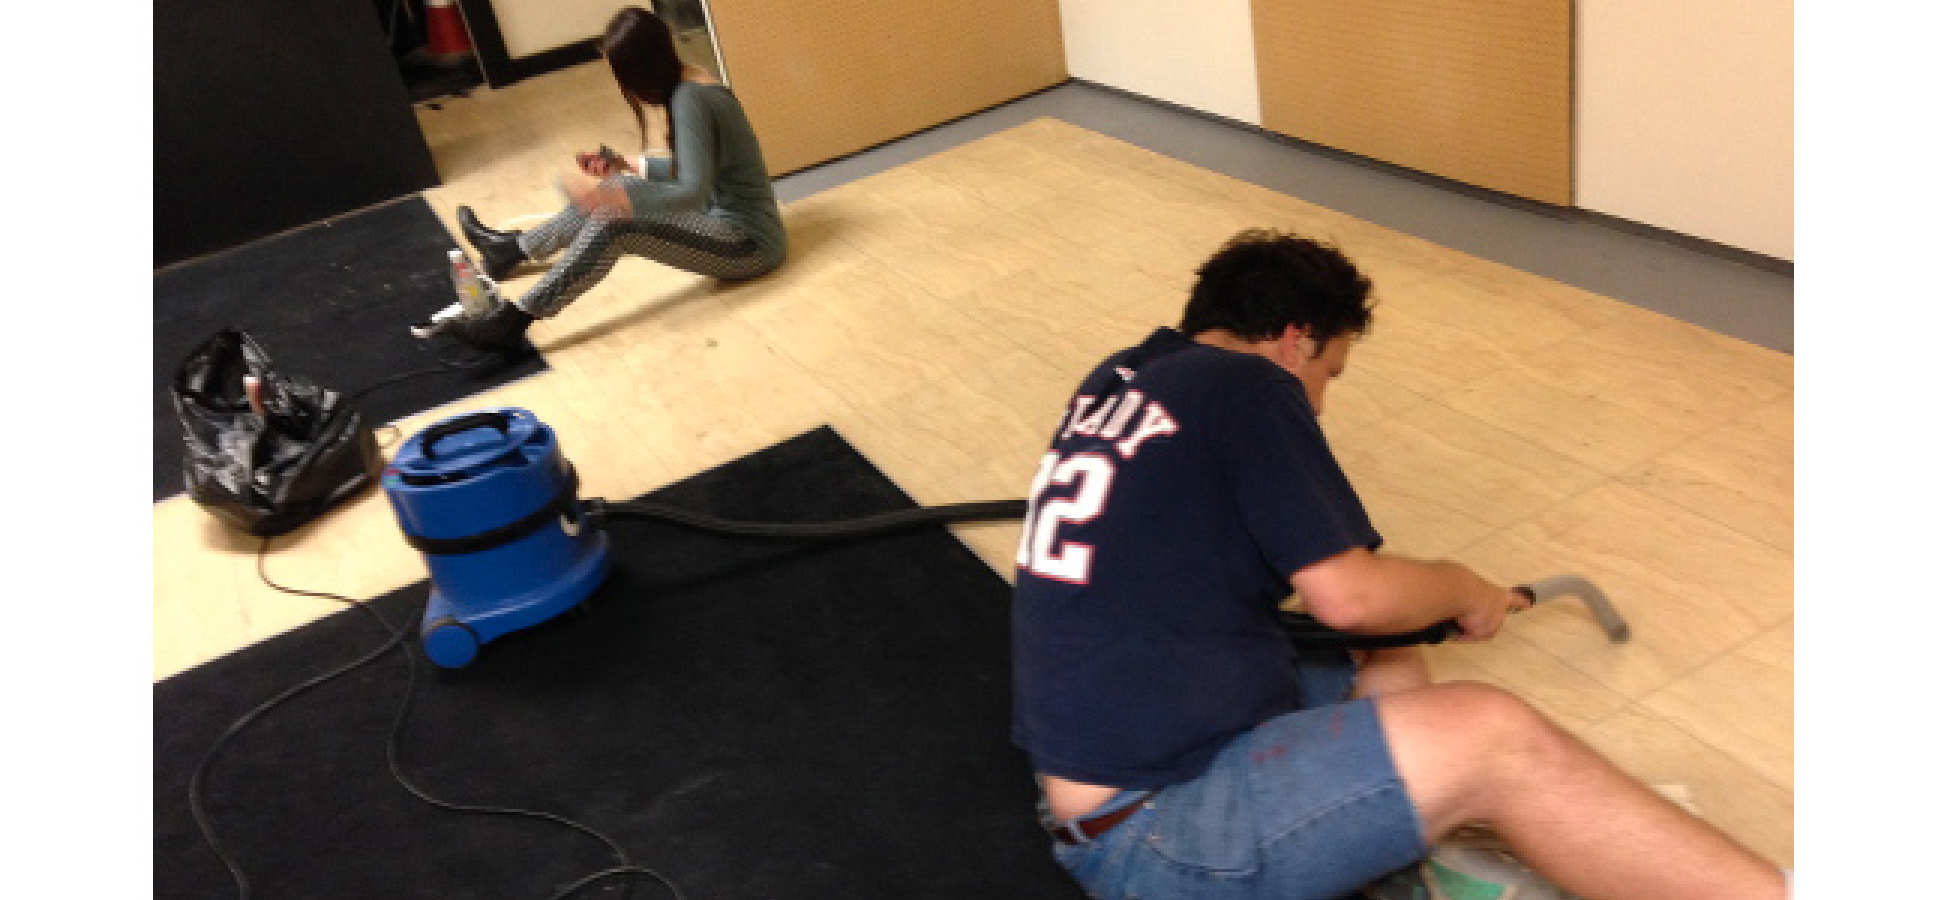 Man vacuumns floor